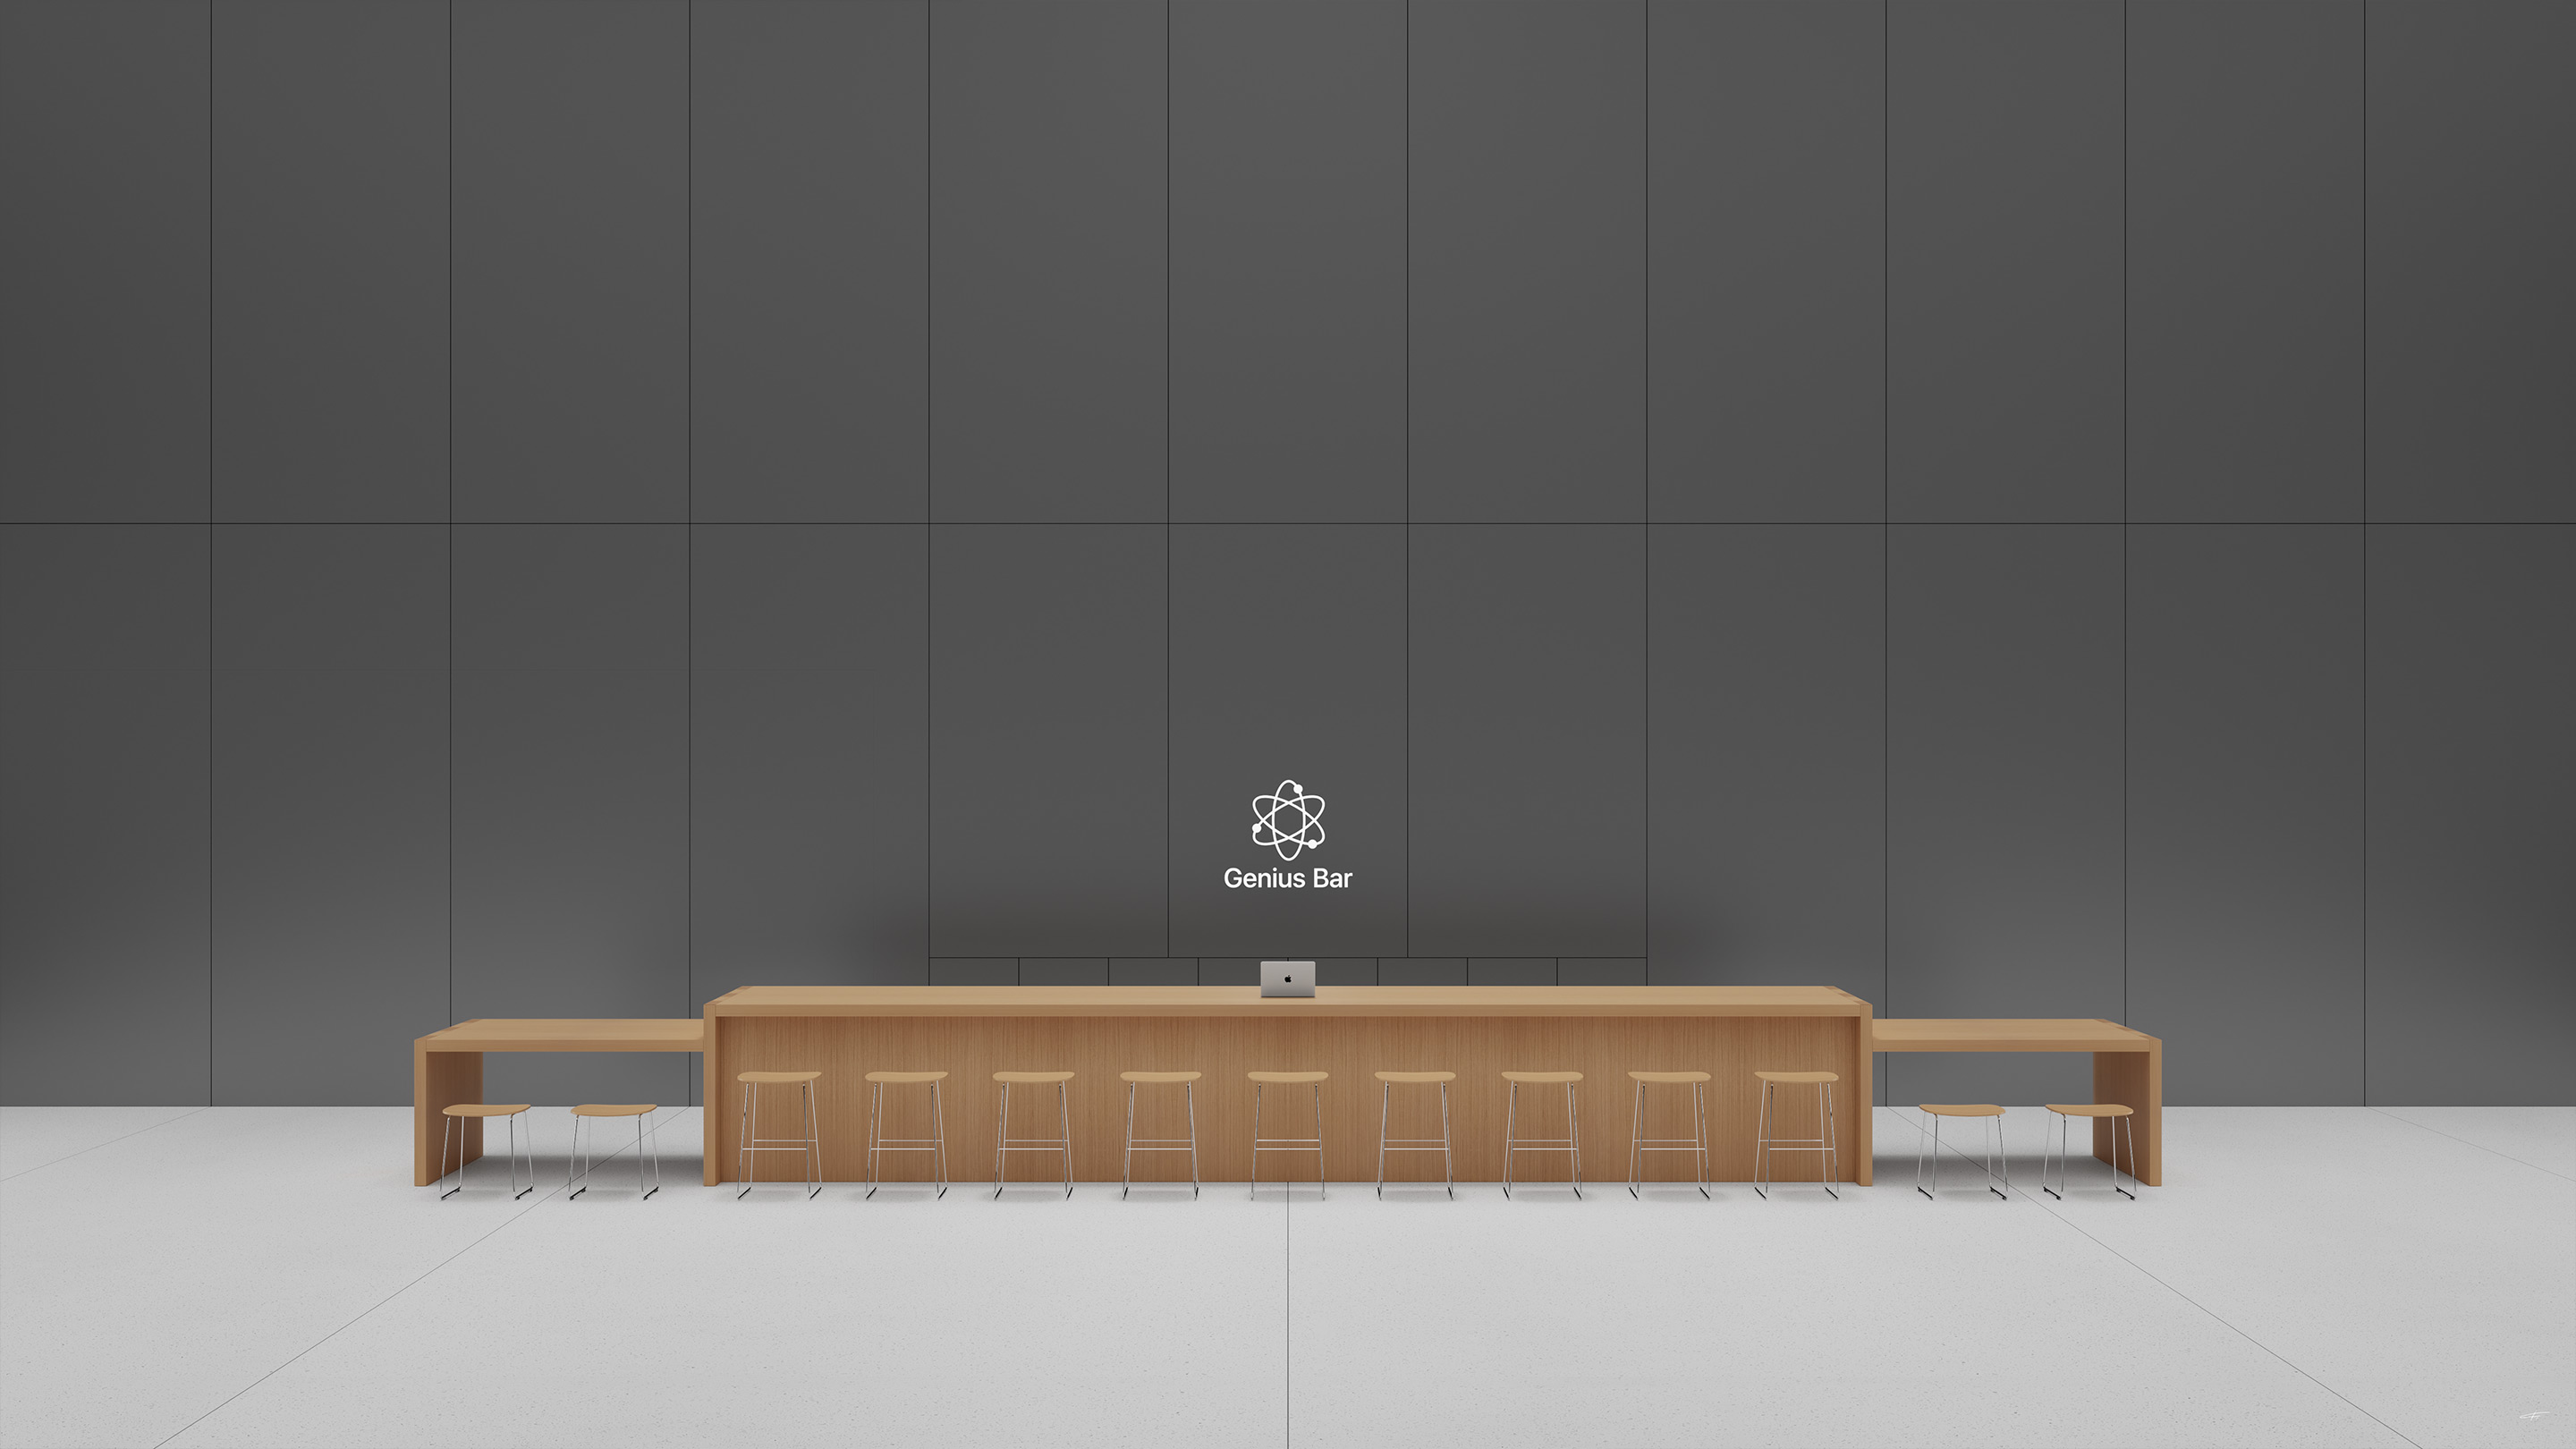 Genius Bar at Apple Pudong